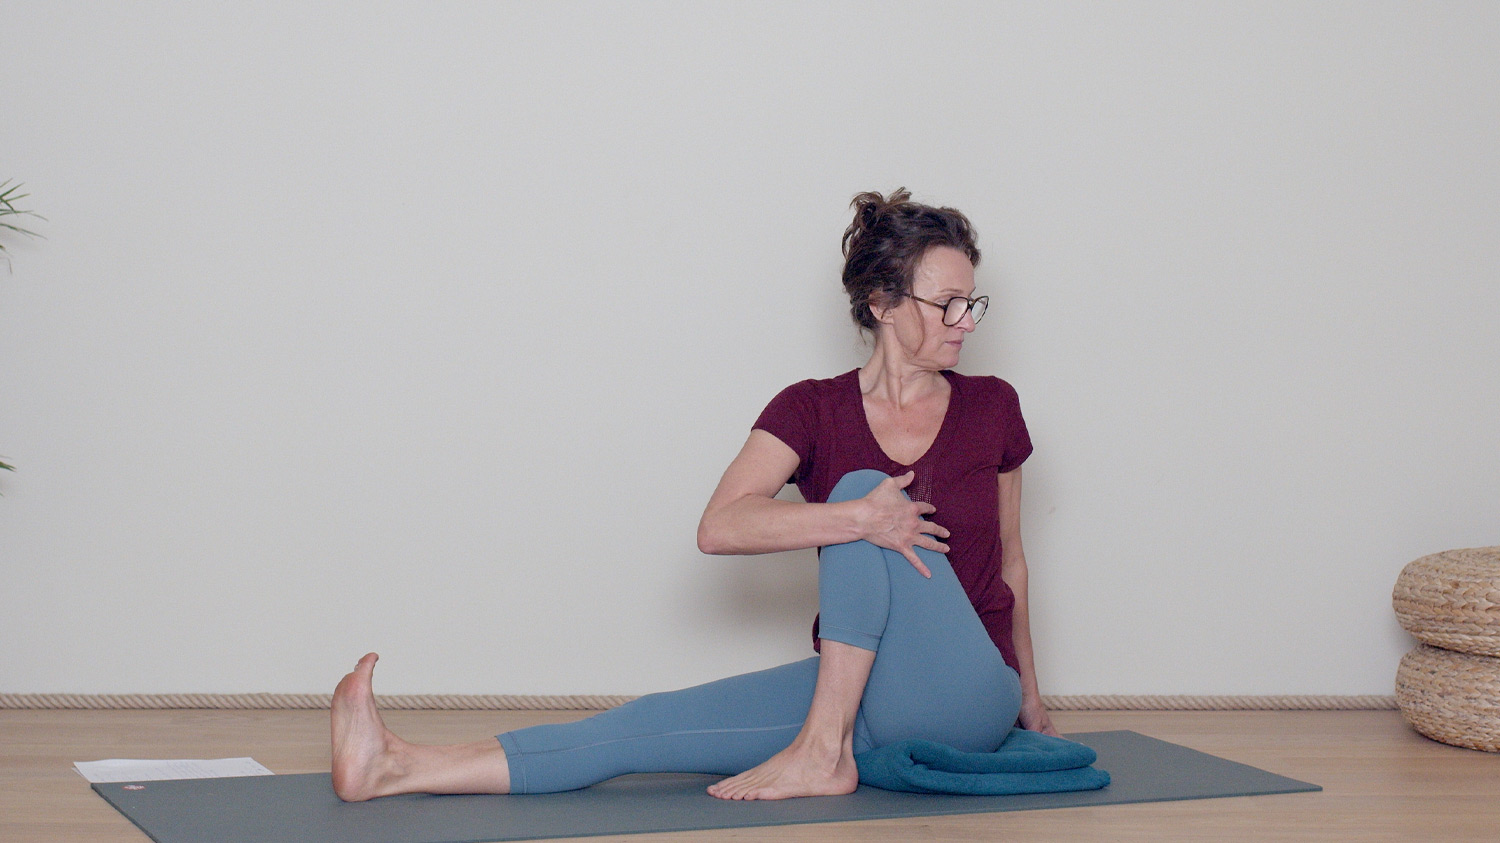 Spécial dos : en cas de sciatique | Cours de yoga en ligne avec Delphine Denis | Hatha Yoga doux